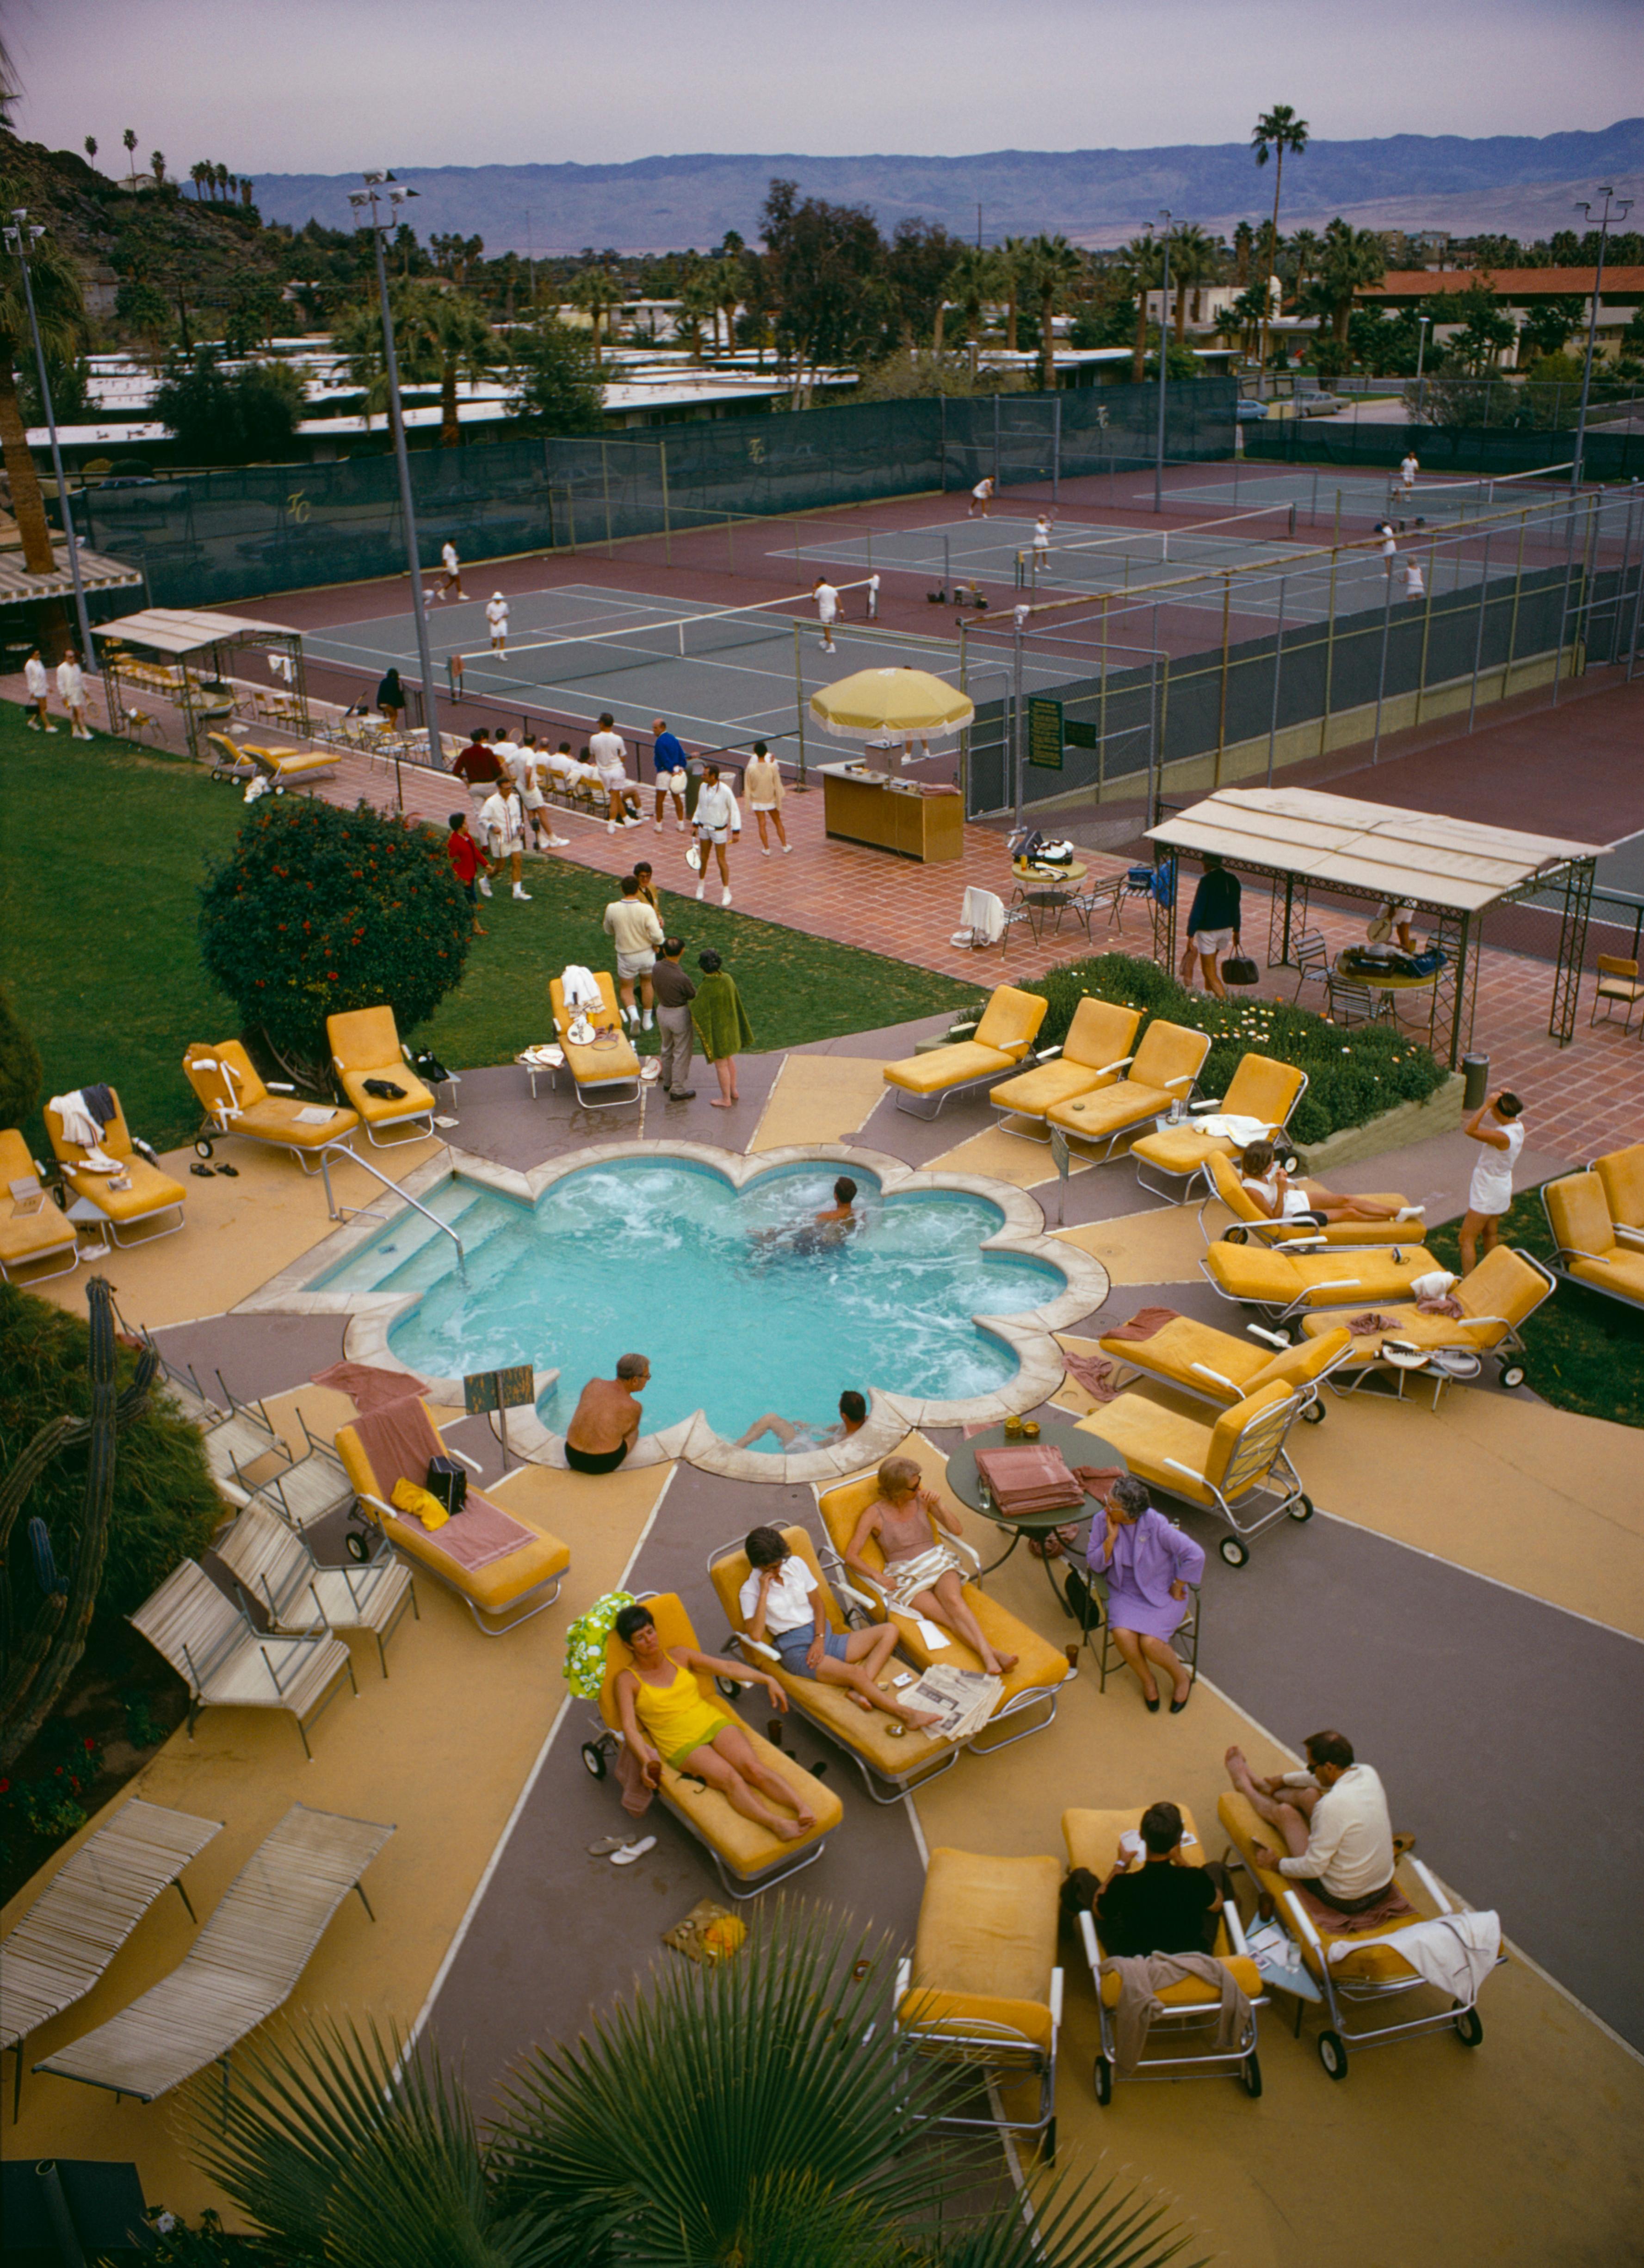 Schlanke Aarons
Entspannen im Club
1970
Chromogener Lambda-Druck
Nachlassgestempelte und handnummerierte Auflage von 150 Stück mit Echtheitszertifikat. 

Mitglieder sonnen sich am Pool des Palm Springs Tennis Club, Kalifornien, um 1970. (Foto: Slim